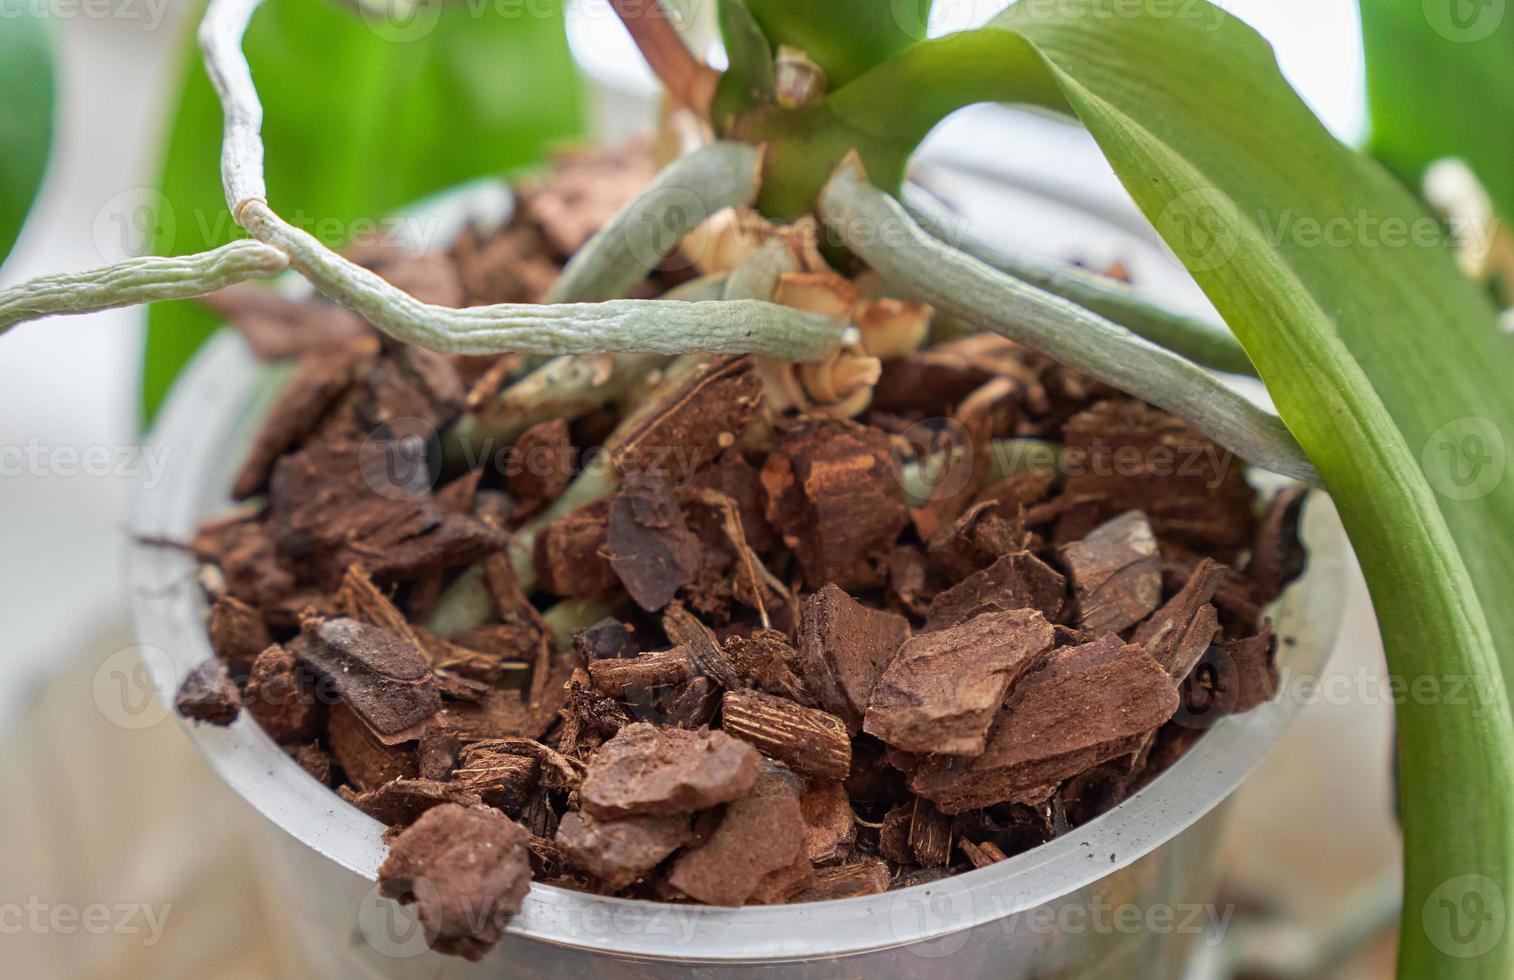 wortel van orchidee bloem in pot met speciaal bodem van schors van planten. foto